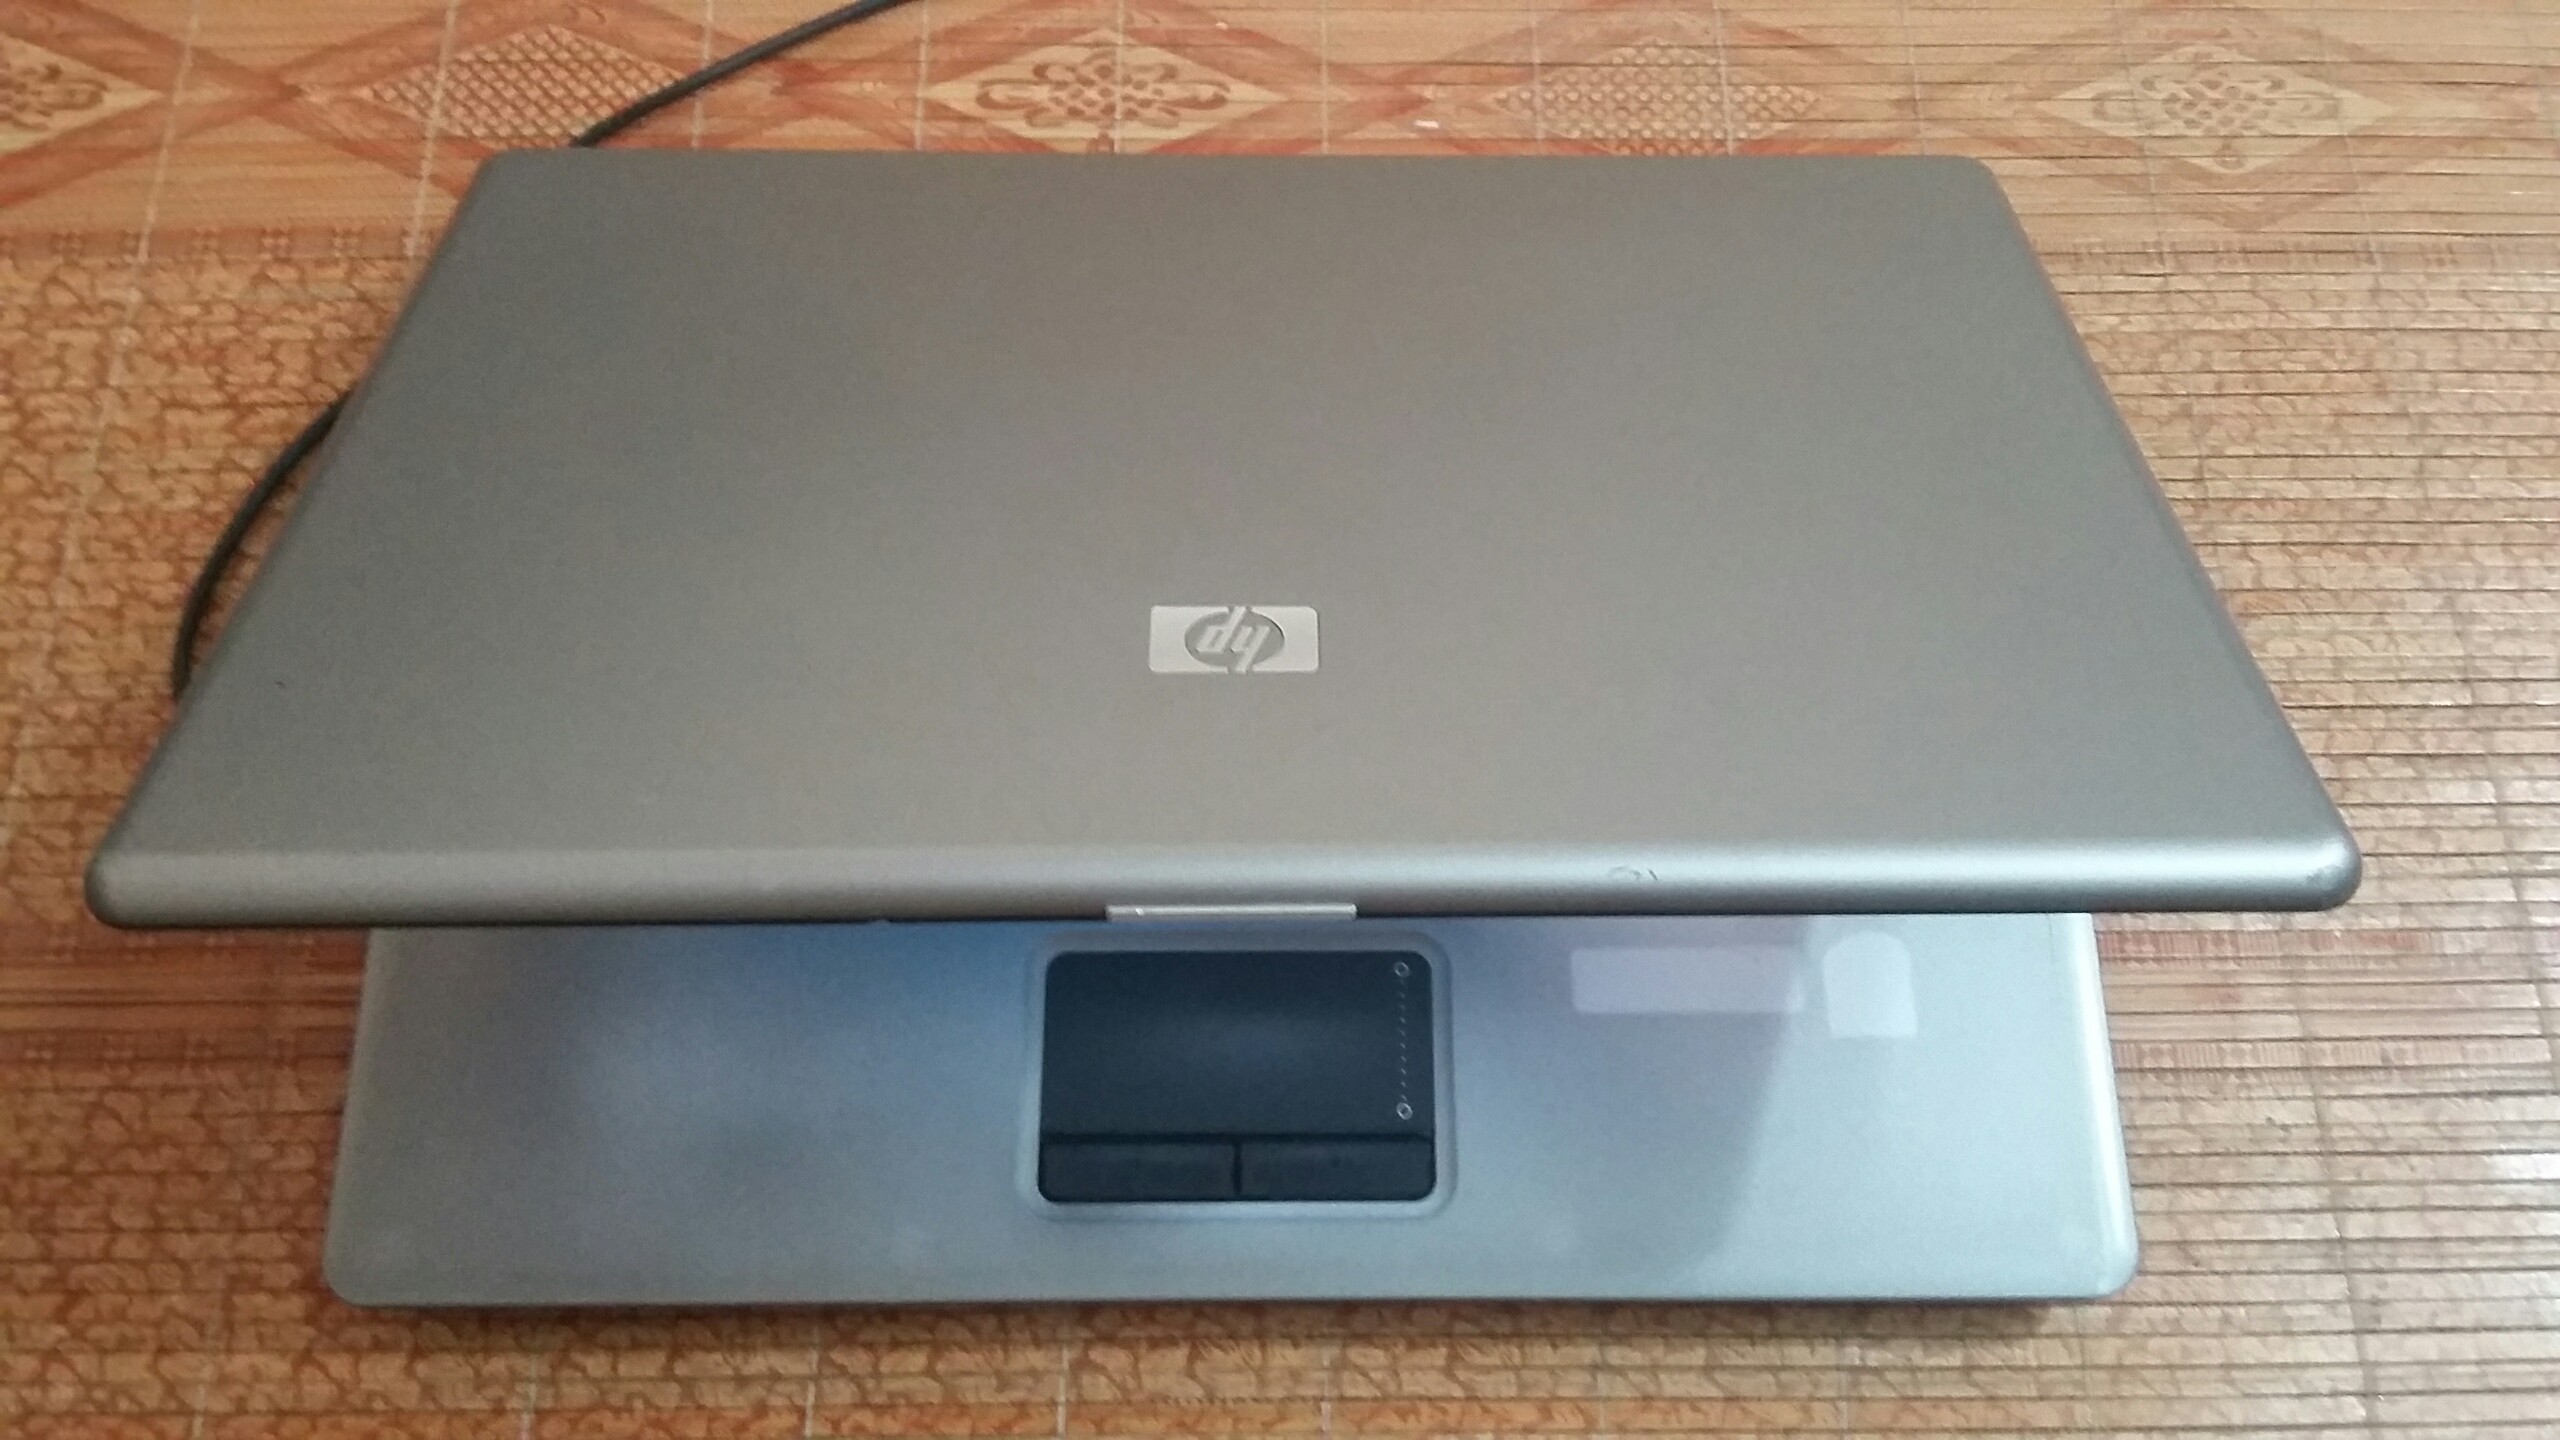 Laptop HP 6520 Intel Pentium T5670